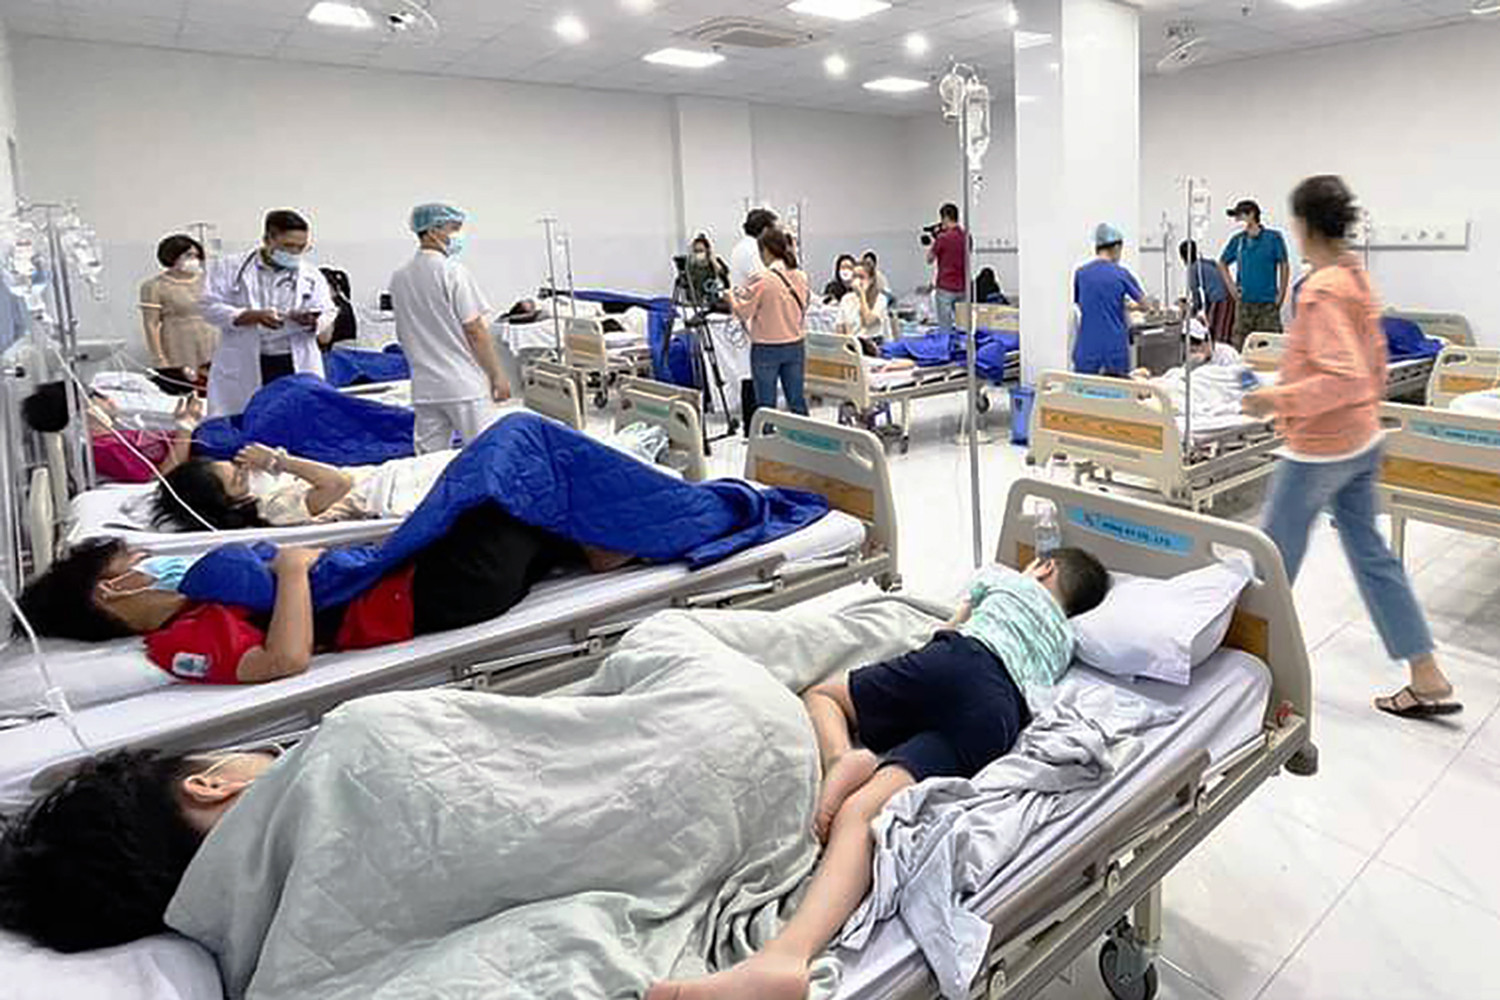 Ngộ độc ở trường Ischool Nha Trang: 7 giáo viên đang nằm viện